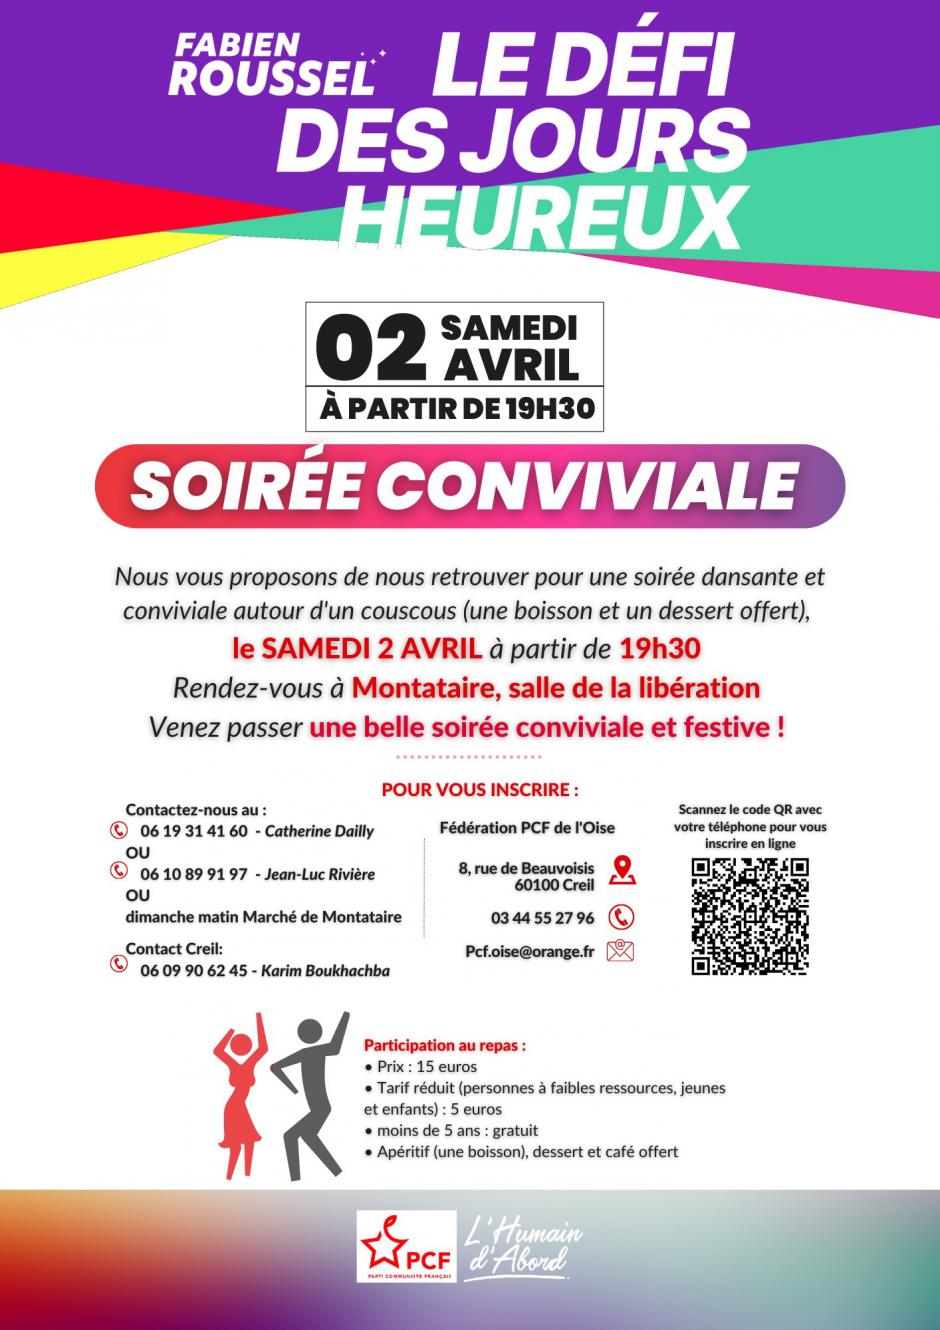 Flyer « Soirée conviviale des Jours heureux » - PCF Creil & Montataire, 2 avril 2022